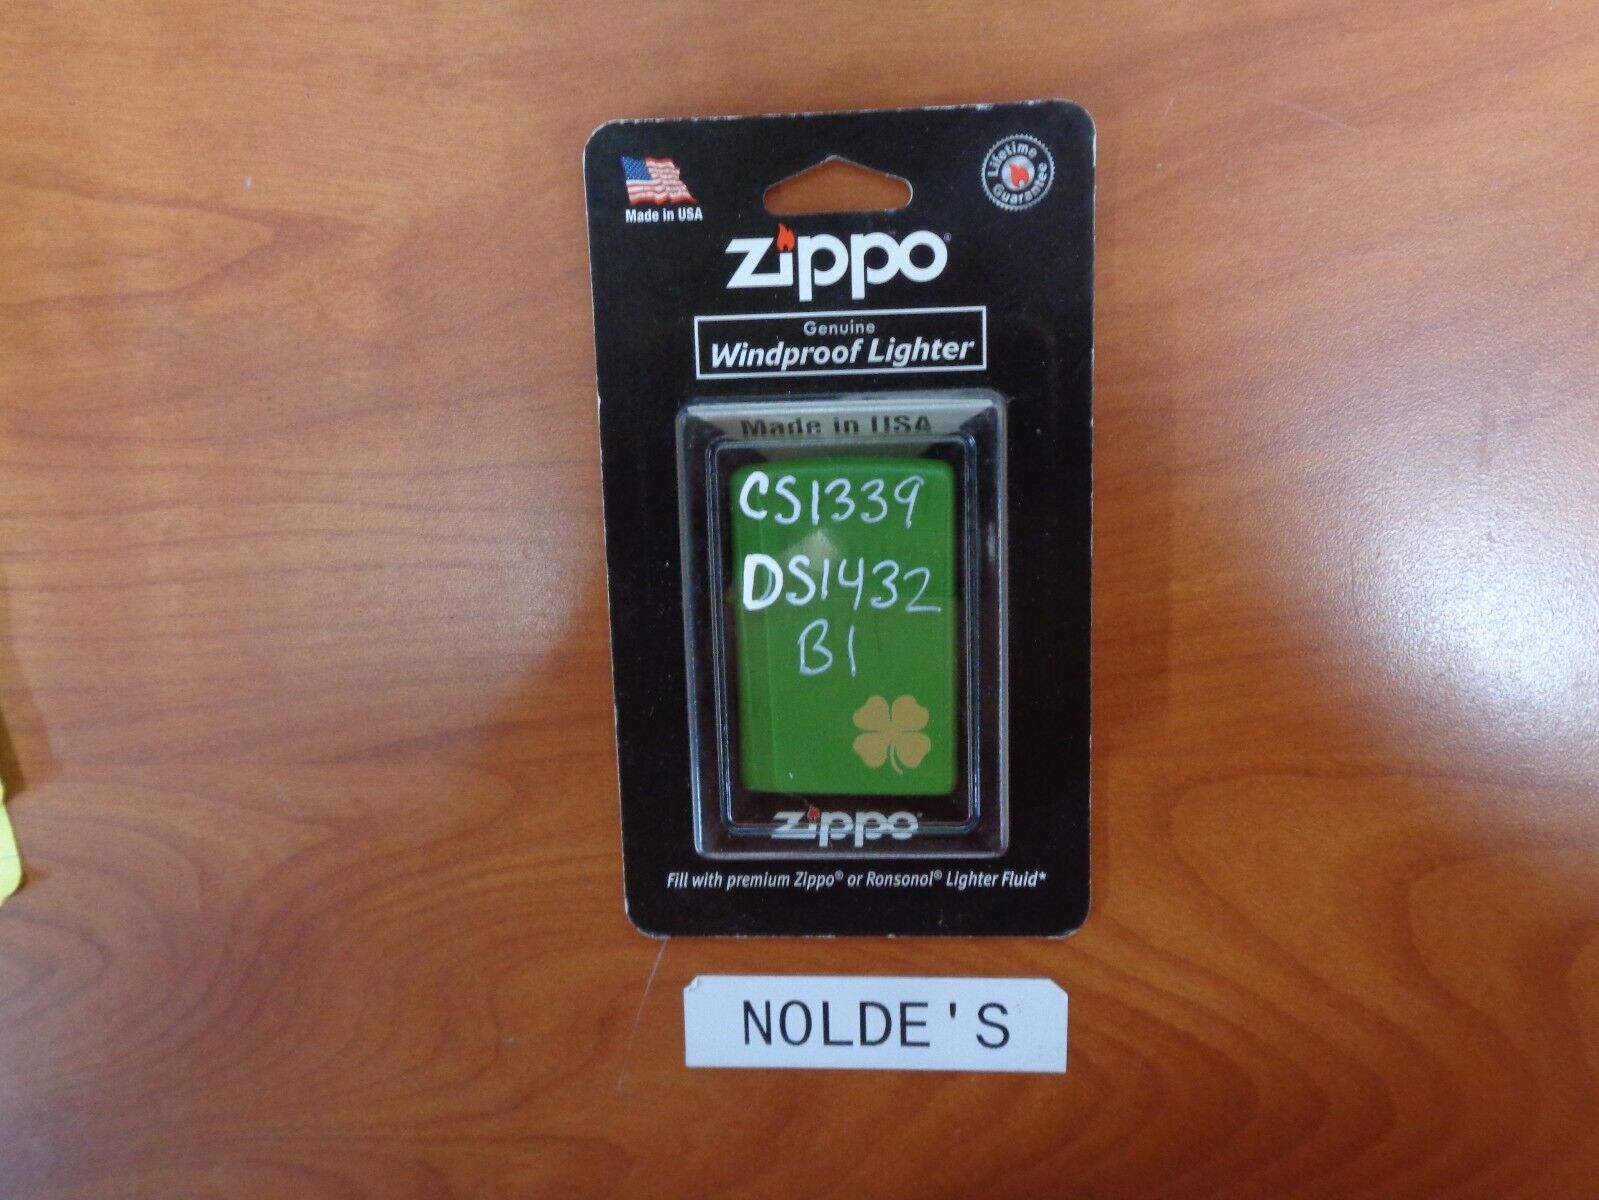 Zippo Green Matte w/ Gold Shamrock   21032         (CS1339  DS1432B1]